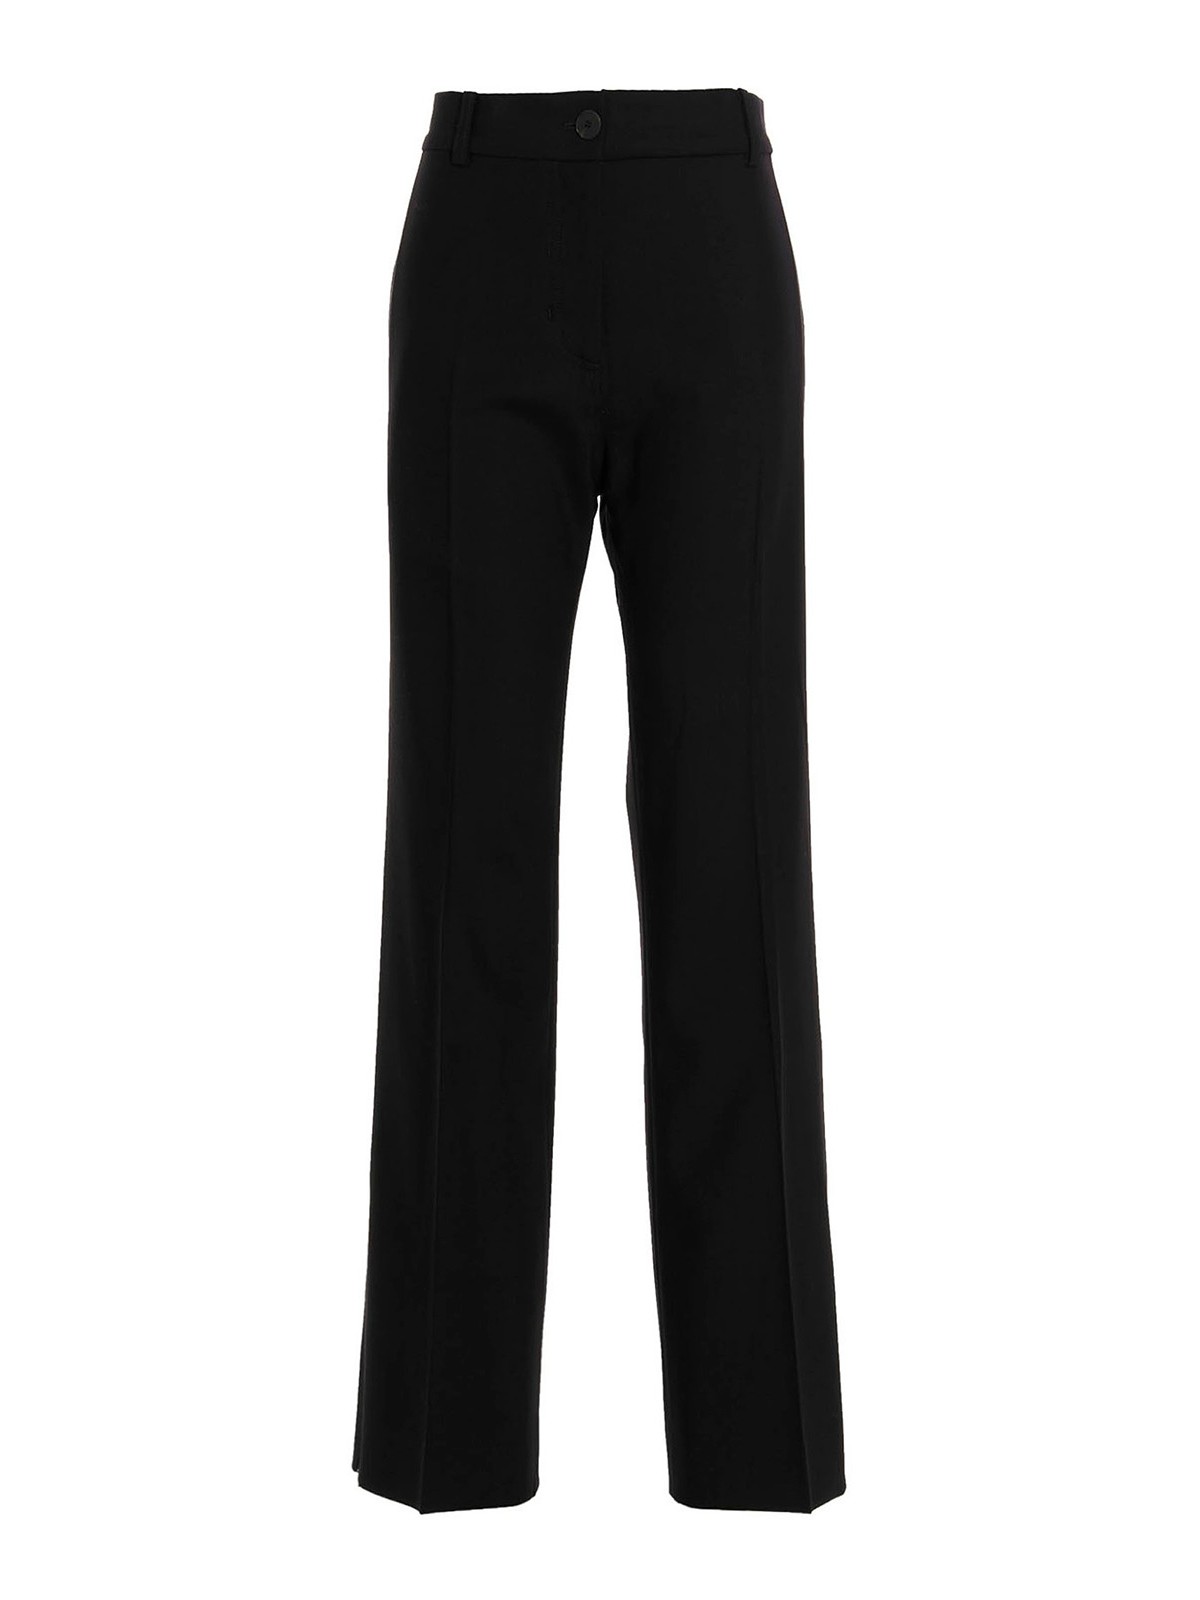 Ladies Autumn Winter Long Sleeved Suit Trousers Suit Elegant Suit Curvy  Flare Pants (Black, S) : Amazon.co.uk: Fashion